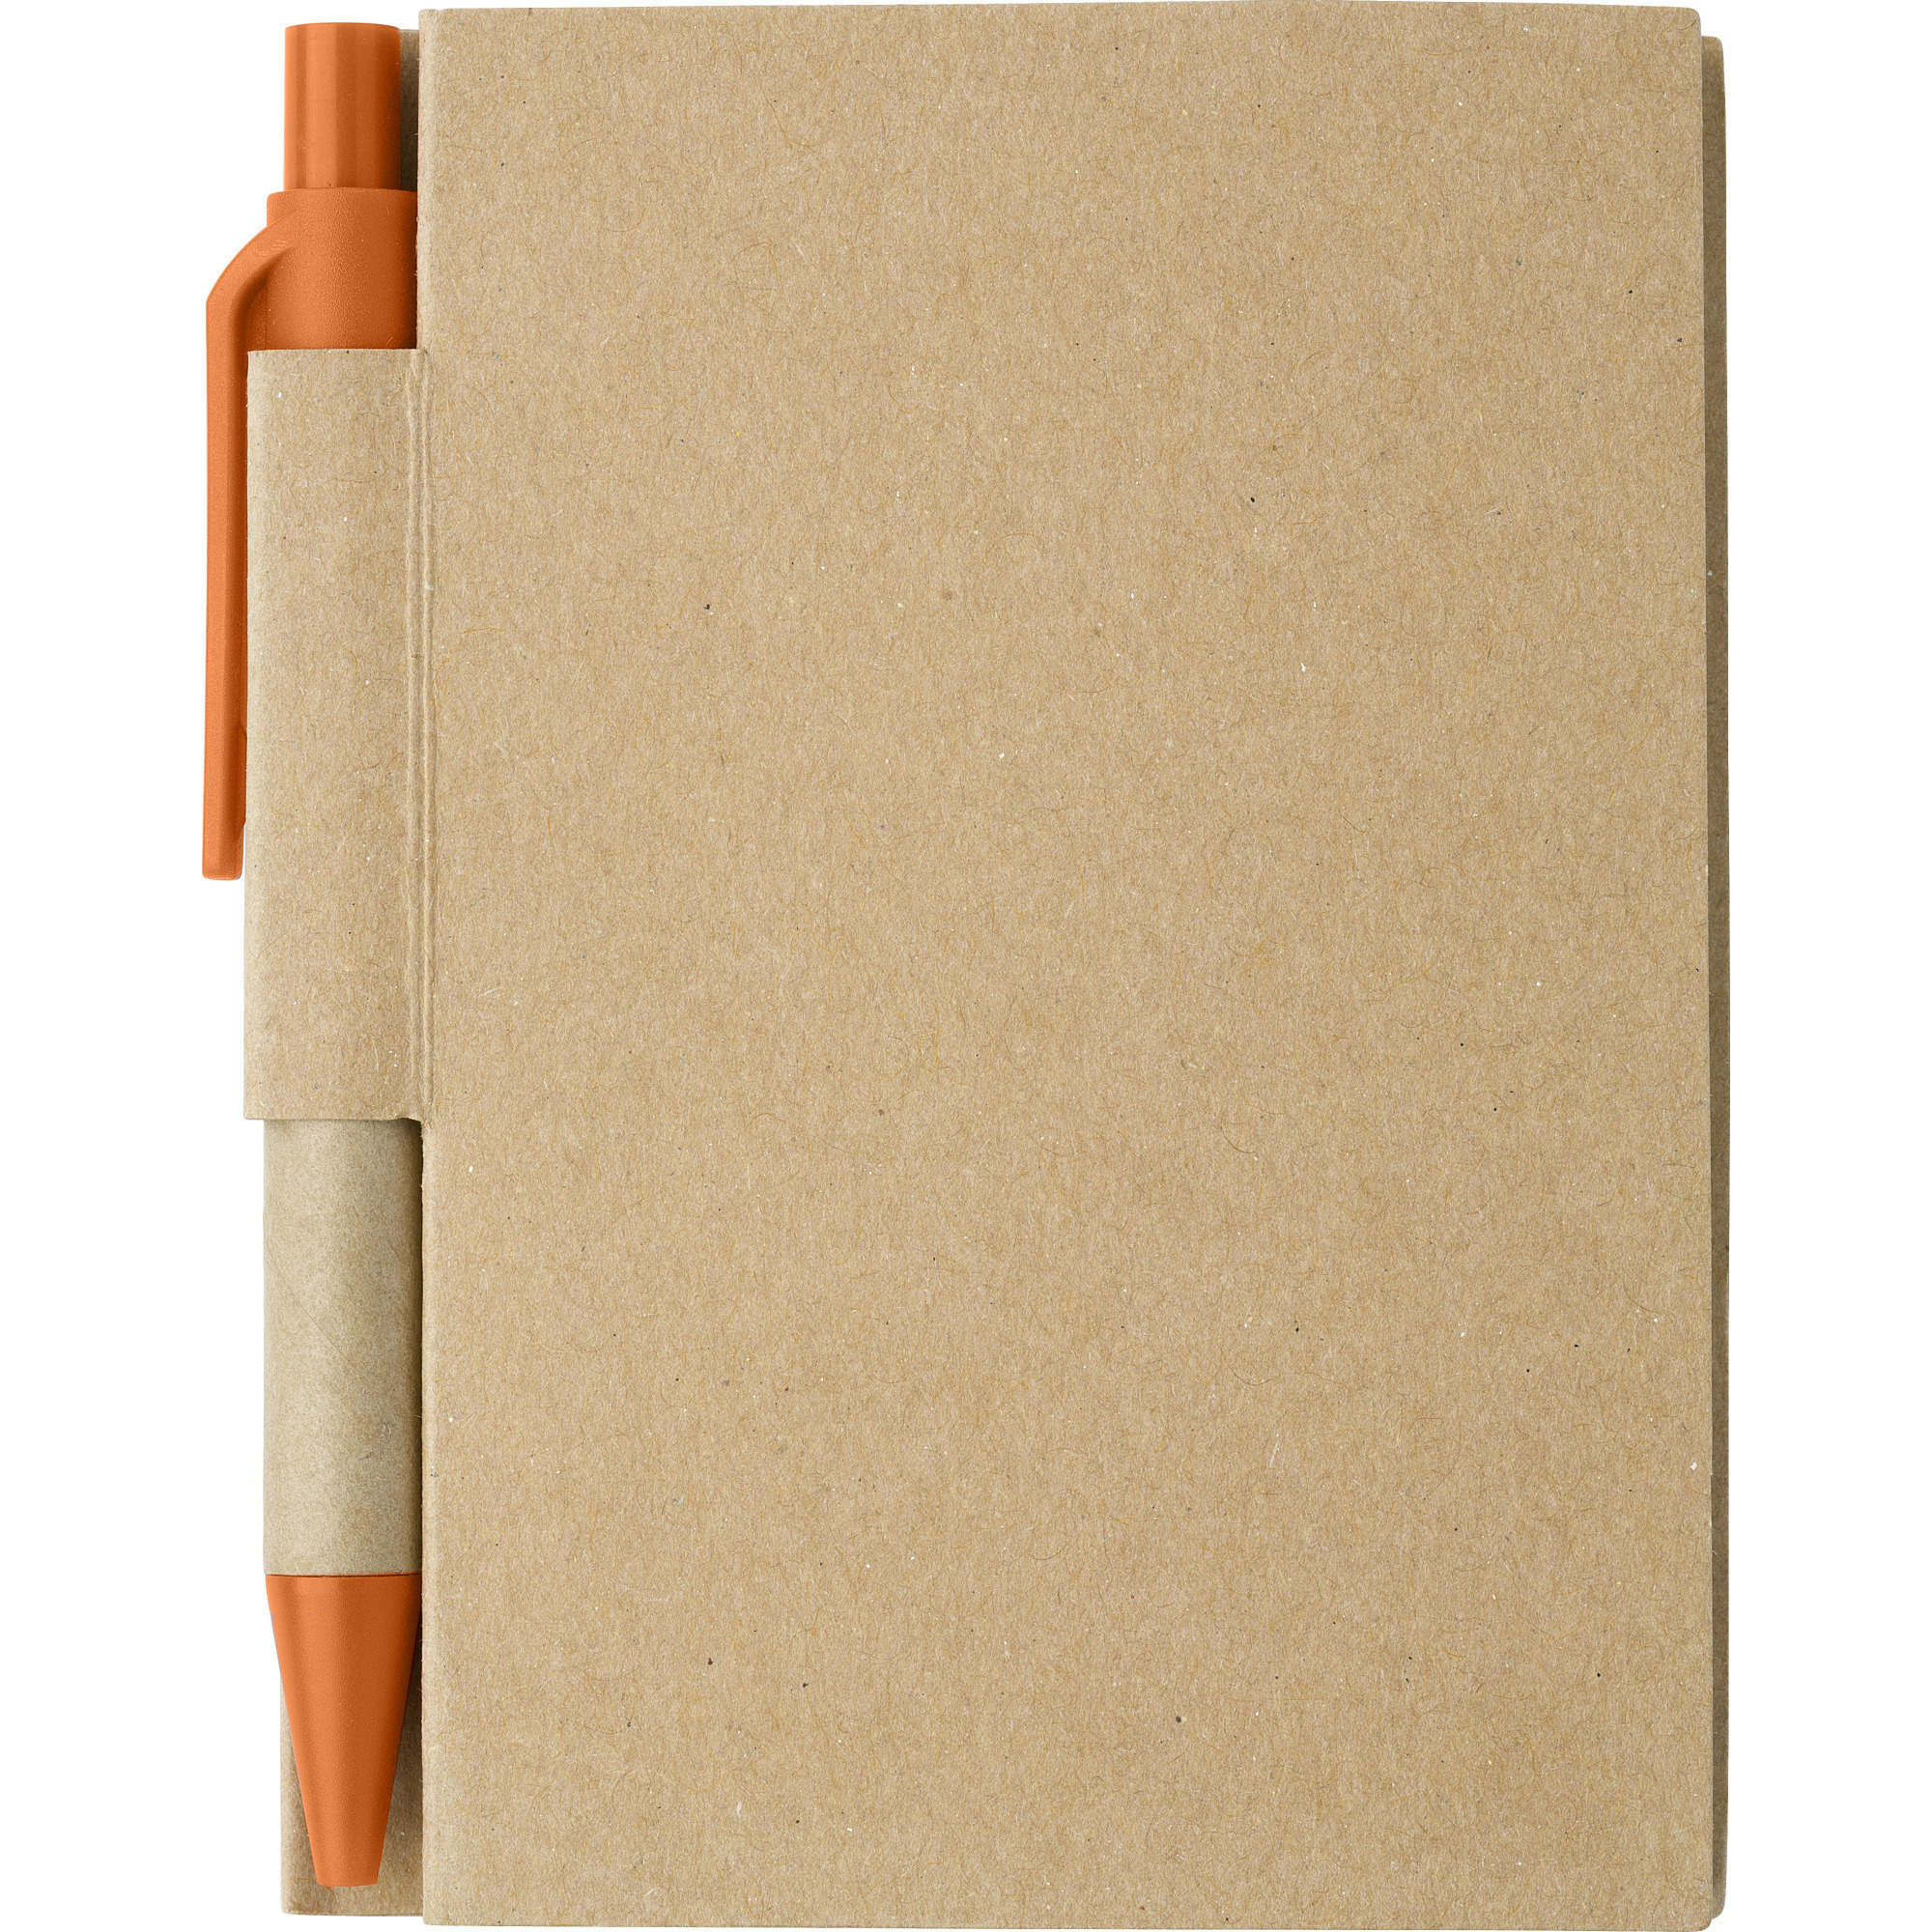 Notitie boekje-blok met balpen harde kaft beige-oranje 11 x 8 cm 80 bladzijden gelinieerd